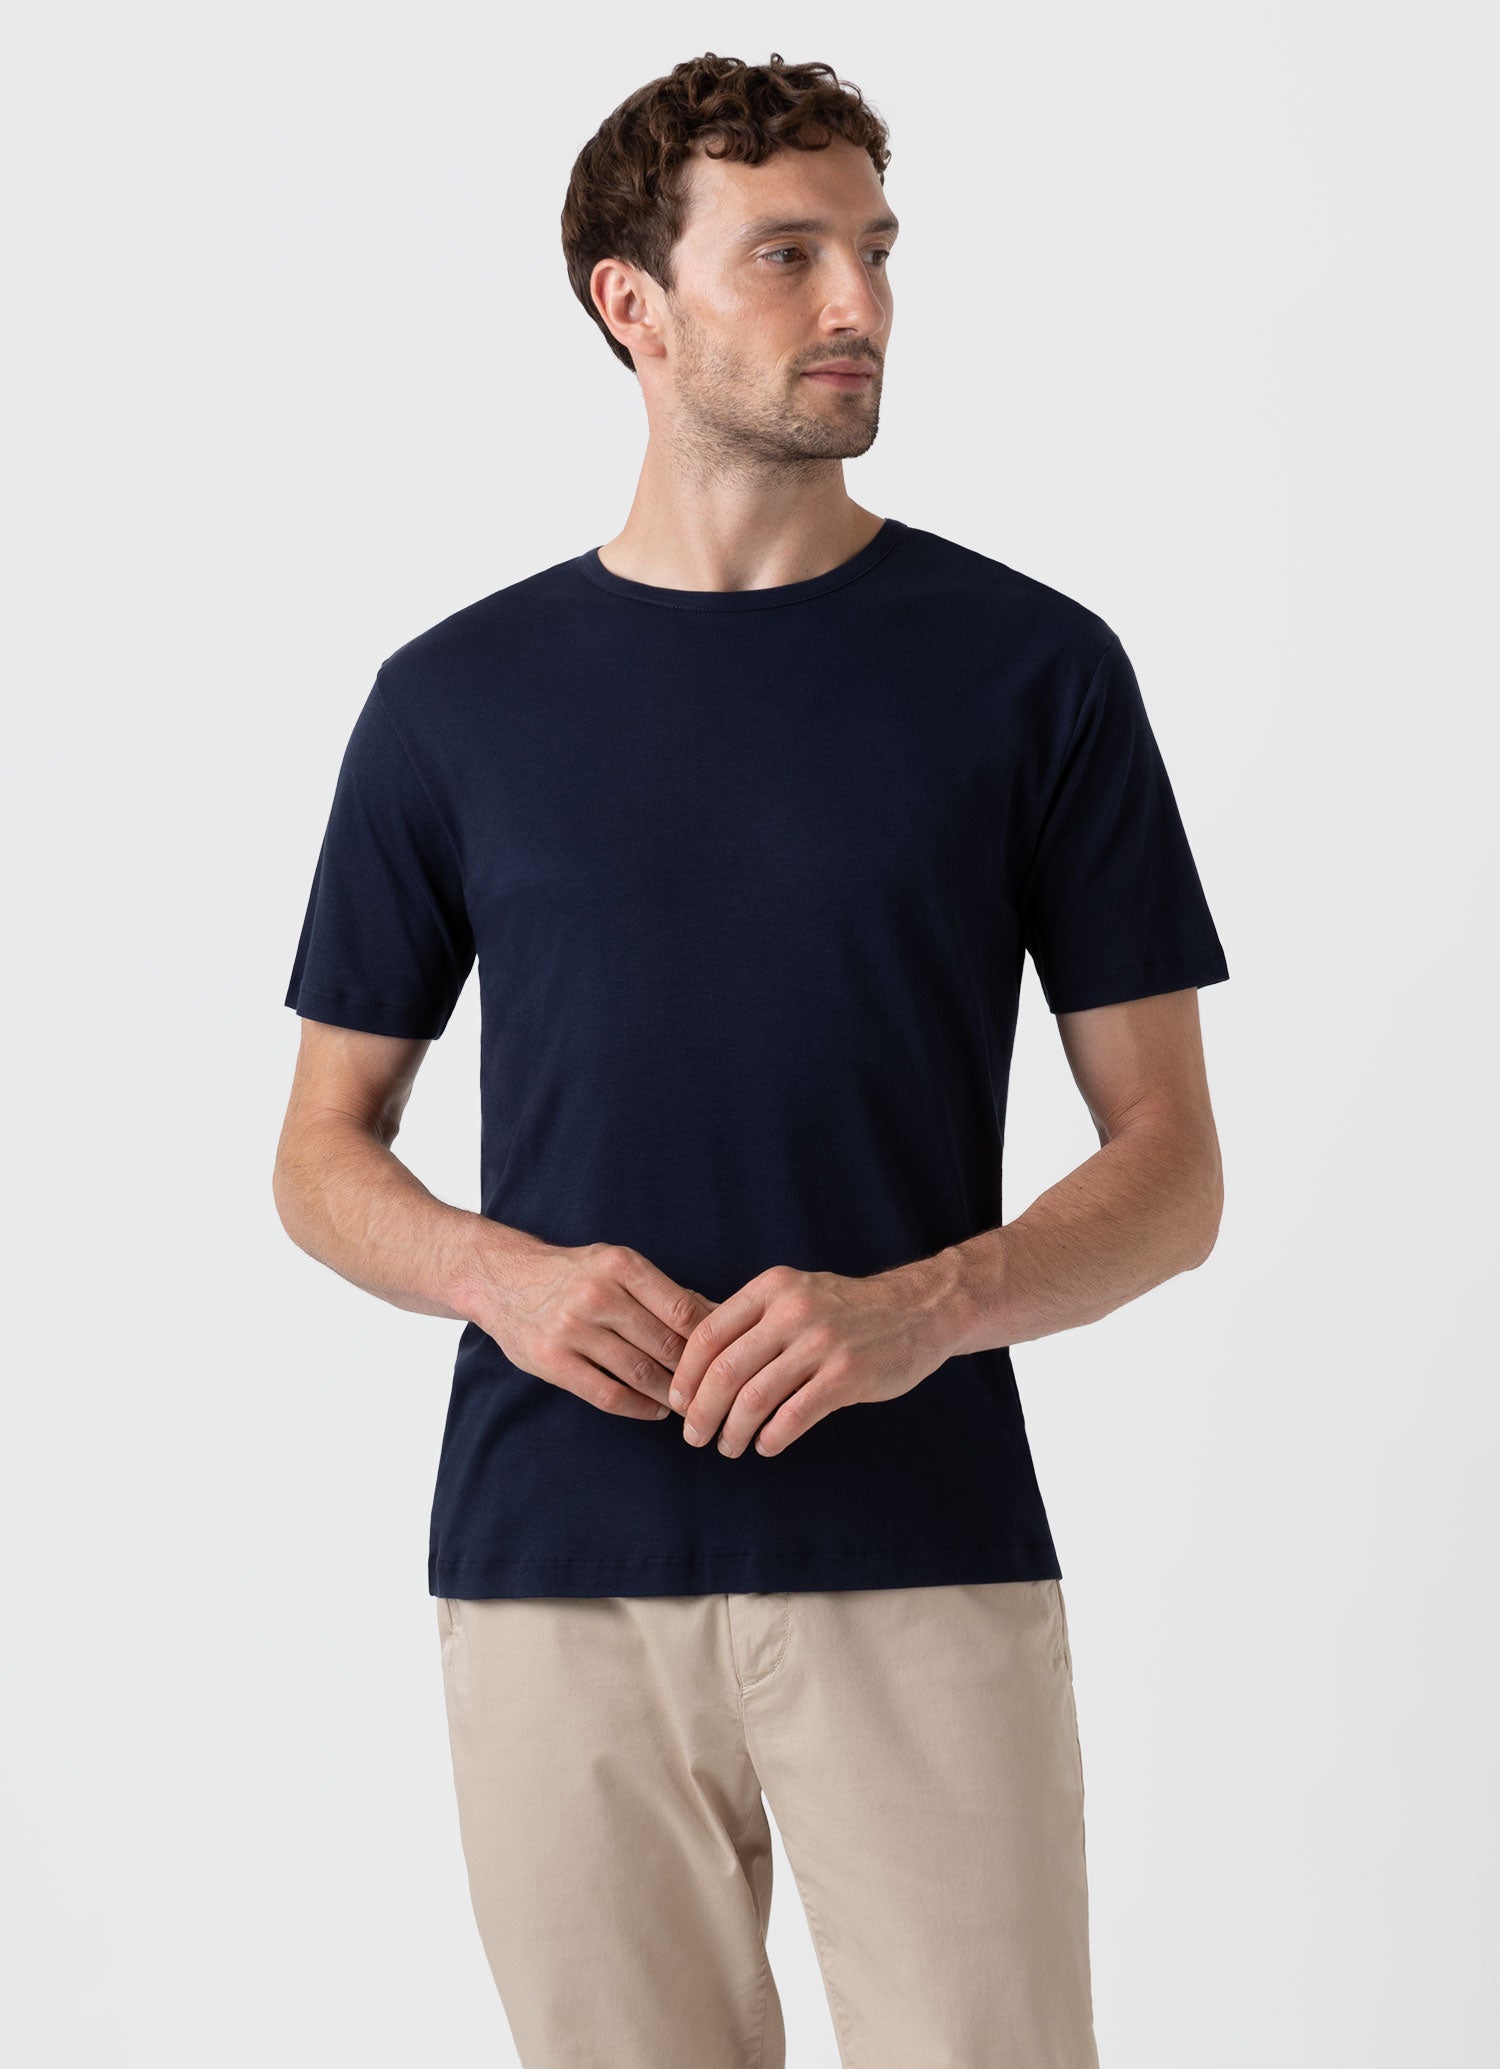 Men\'s Riviera Midweight Pocket T-shirt in Navy | Sunspel